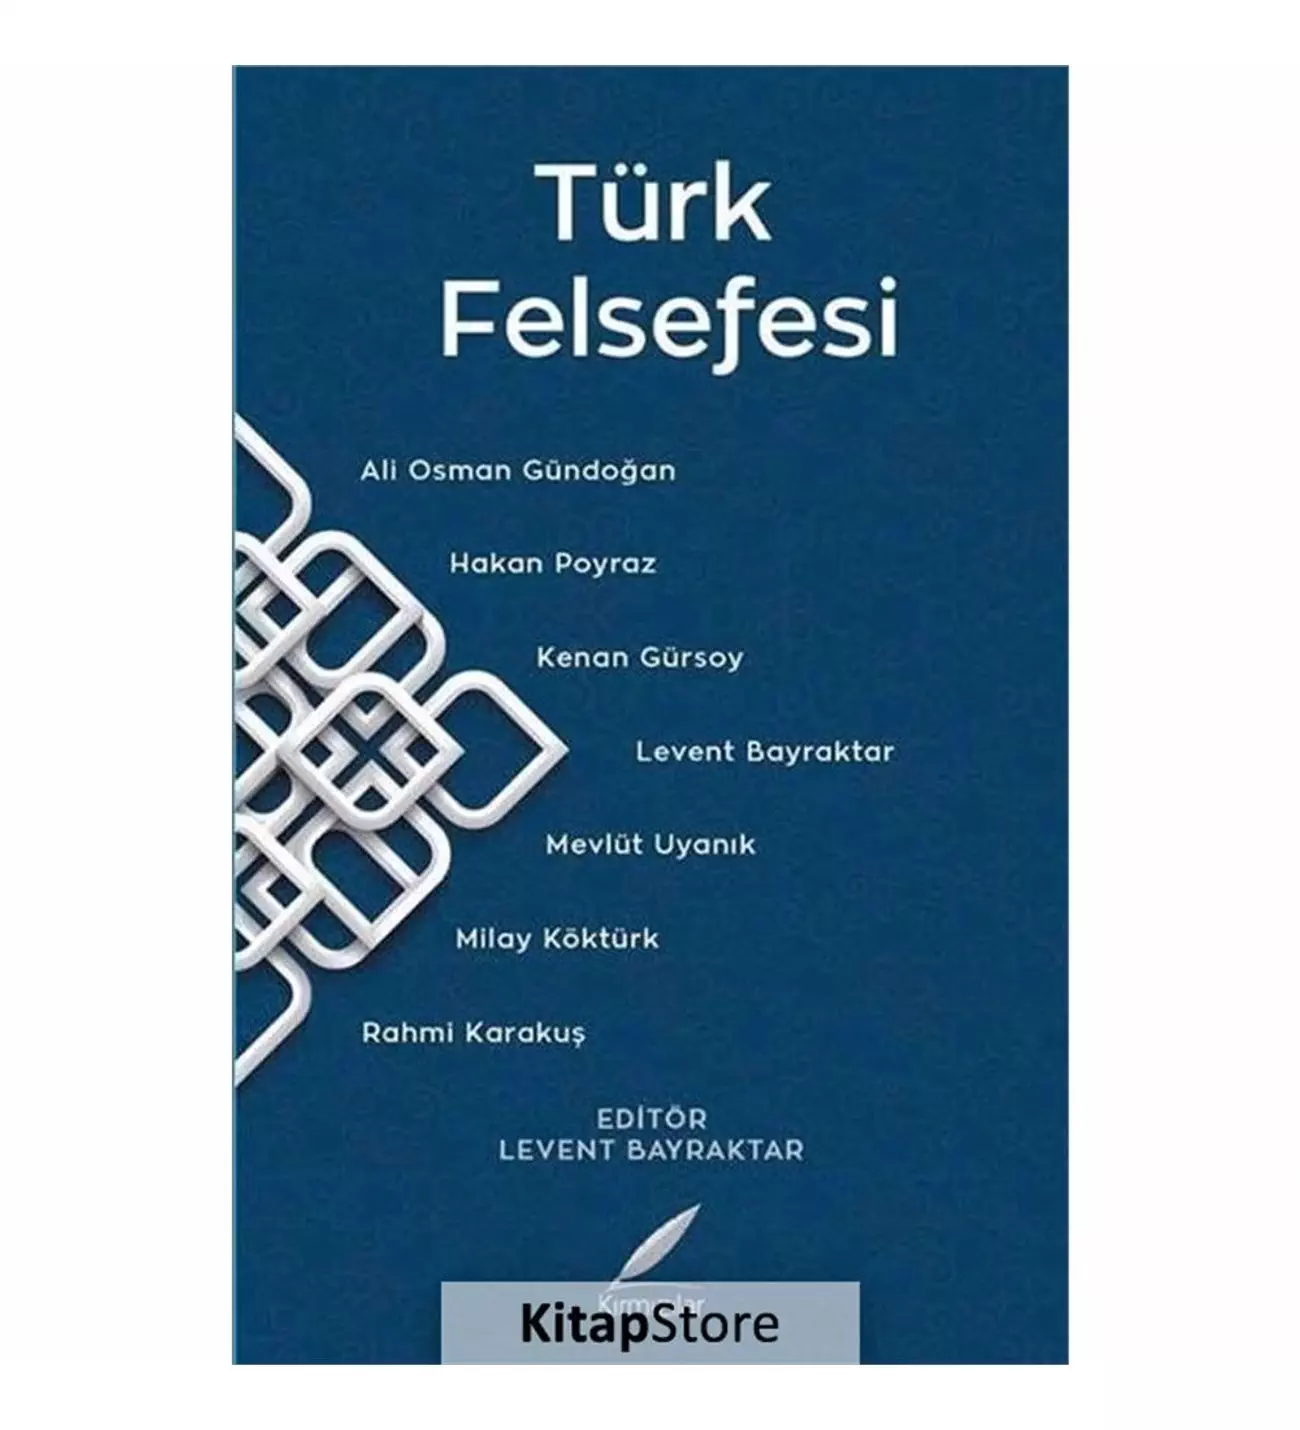 Türk felsefesi: imkanı ve gerekçeleri üzerine notlar